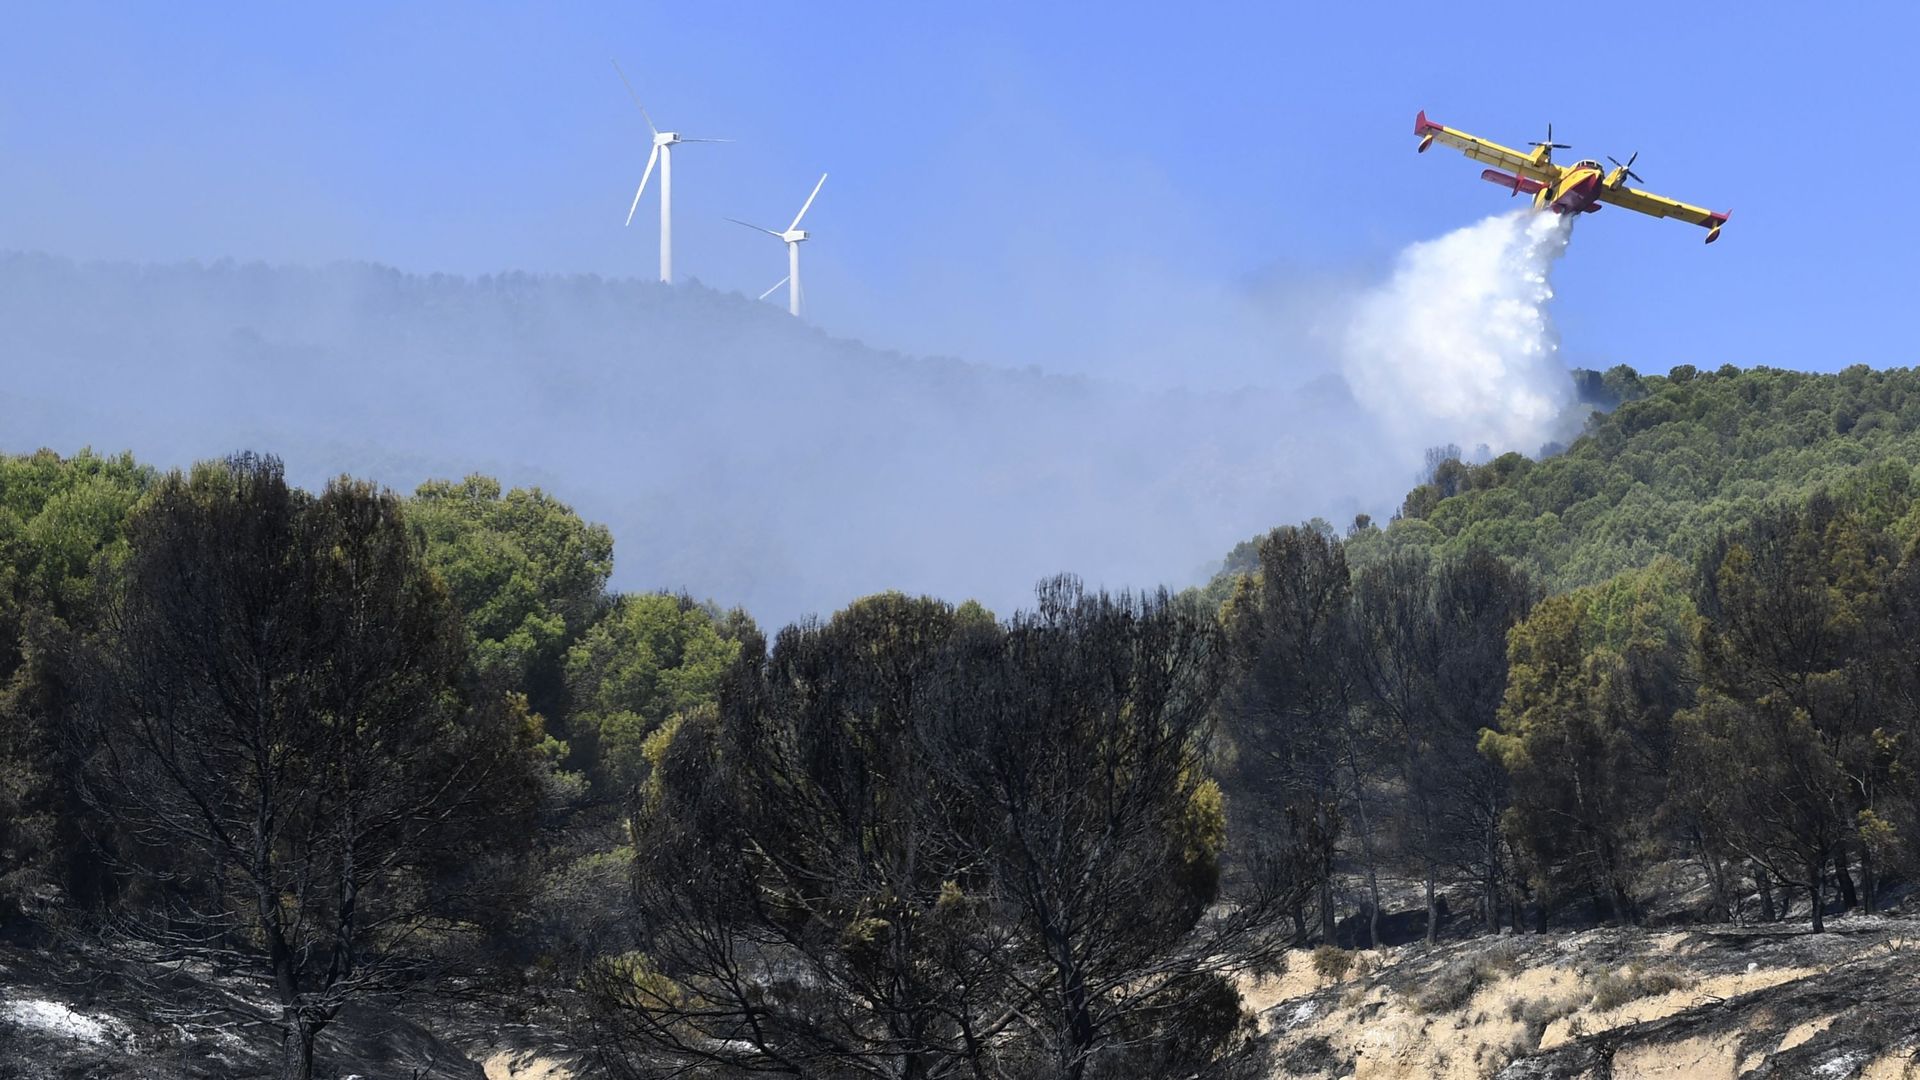 Un avion de pompiers Canadair largue de l'eau pour éteindre un feu de forêt dans le parc naturel de Moncayo, près du village de Borja, dans la région nord de l'Aragon, le 15 août 2022. 